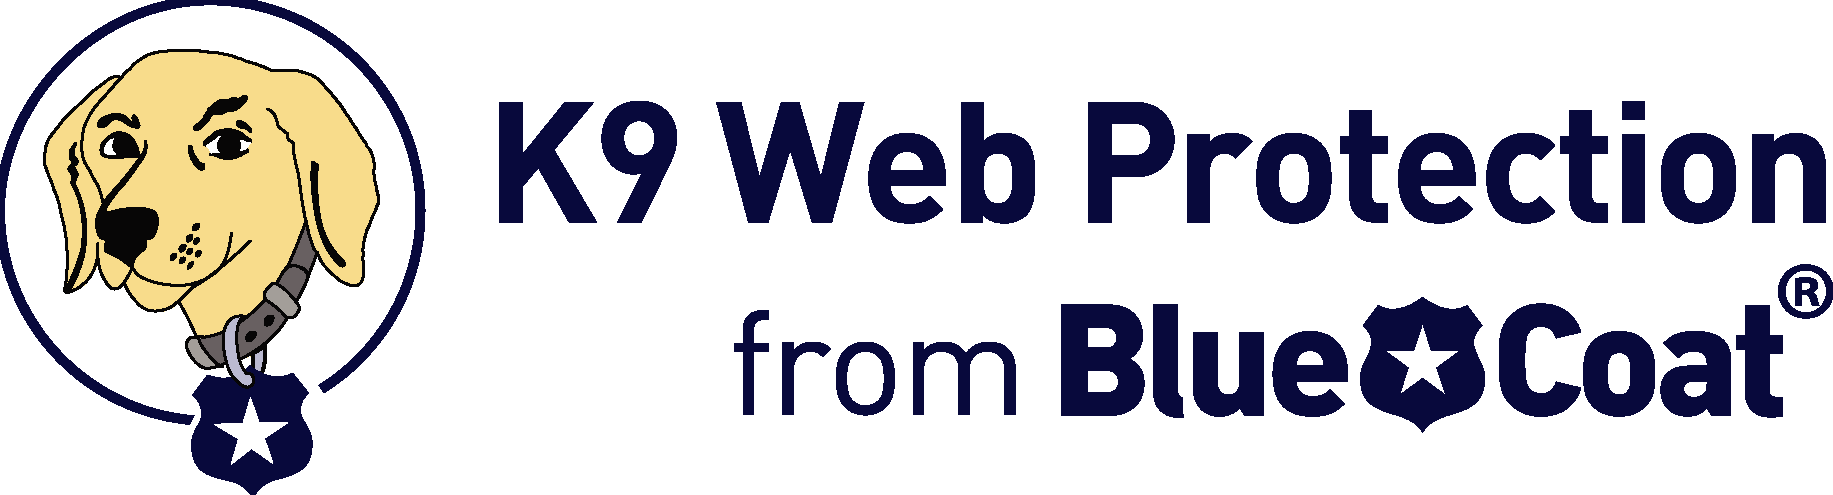 BlueCoat K9 Web Protection Logo Vector